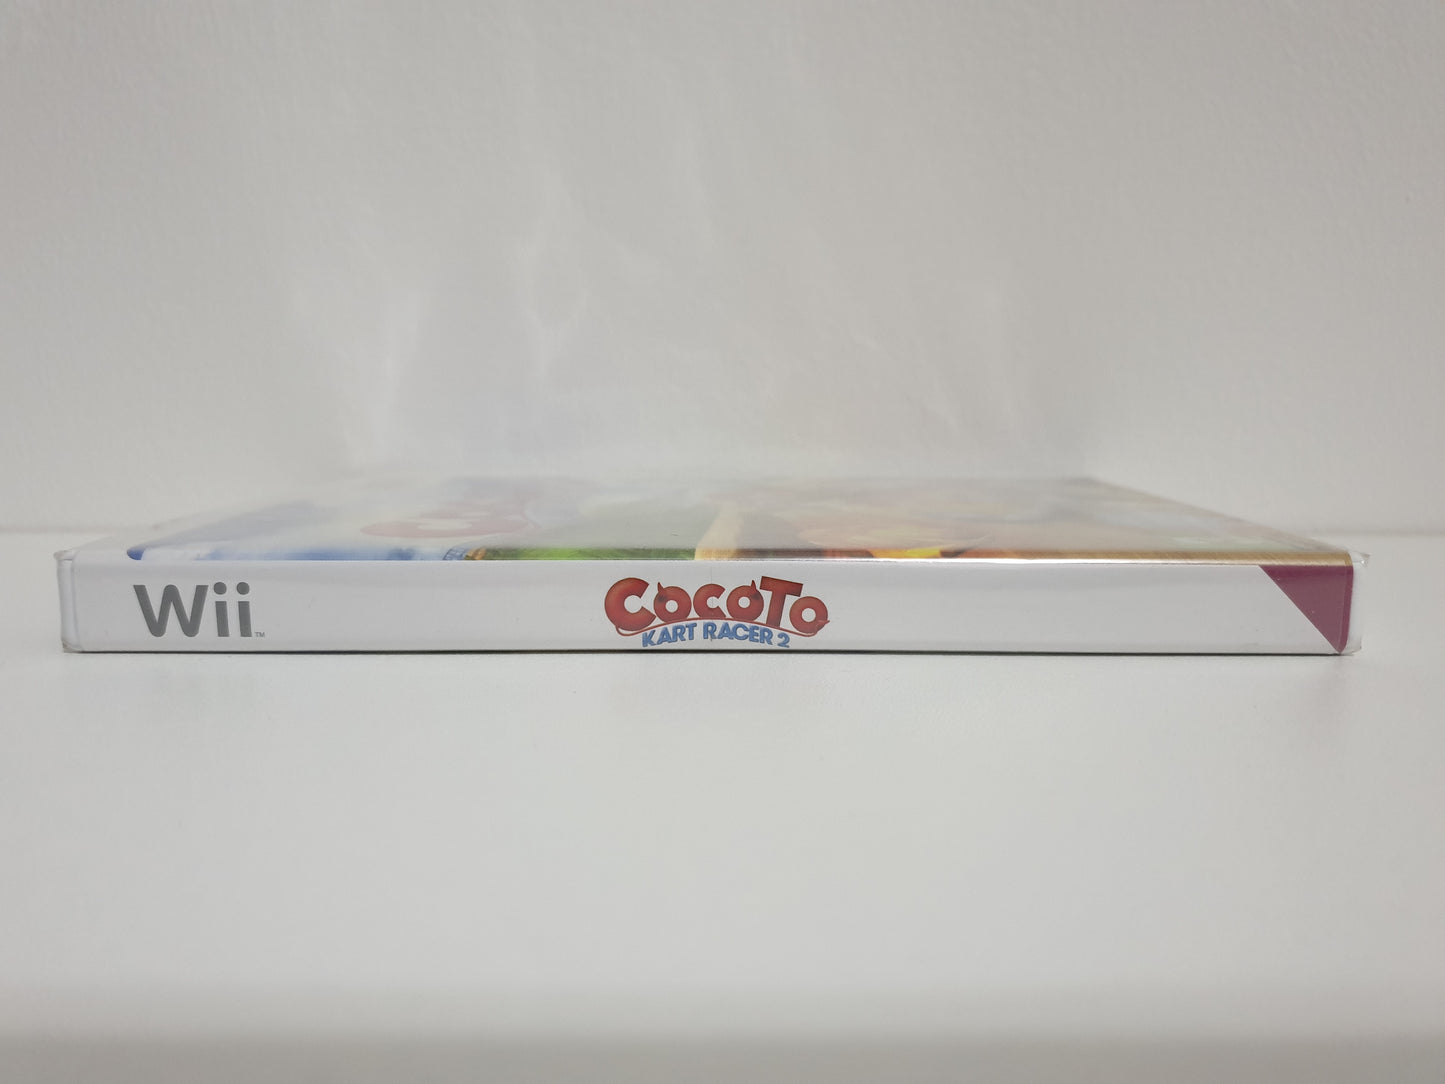 Cocoto Kart Racer 2 Wii - Neuf sous blister (Impact sur le devant de la boîte)